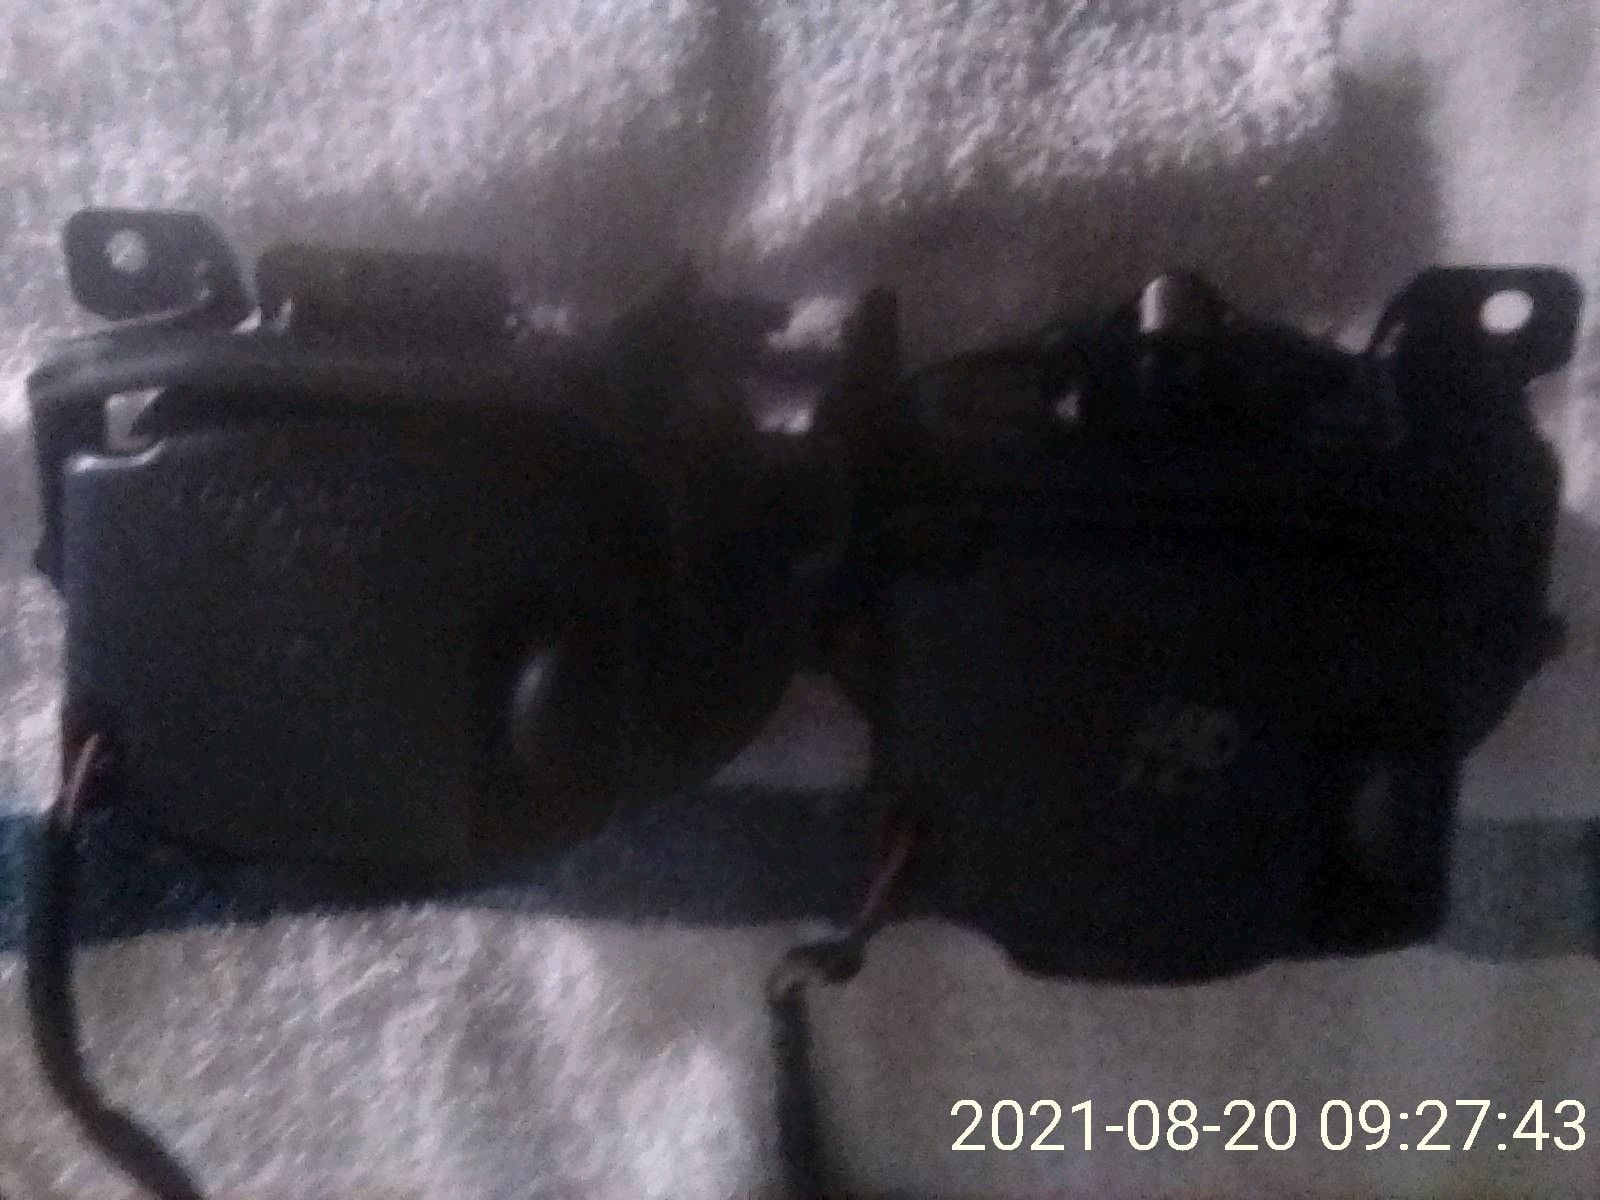 Lights - FD - OEM Fog Lights - Used - 1993 to 2002 Mazda RX-7 - San Jose, CA 95121, United States